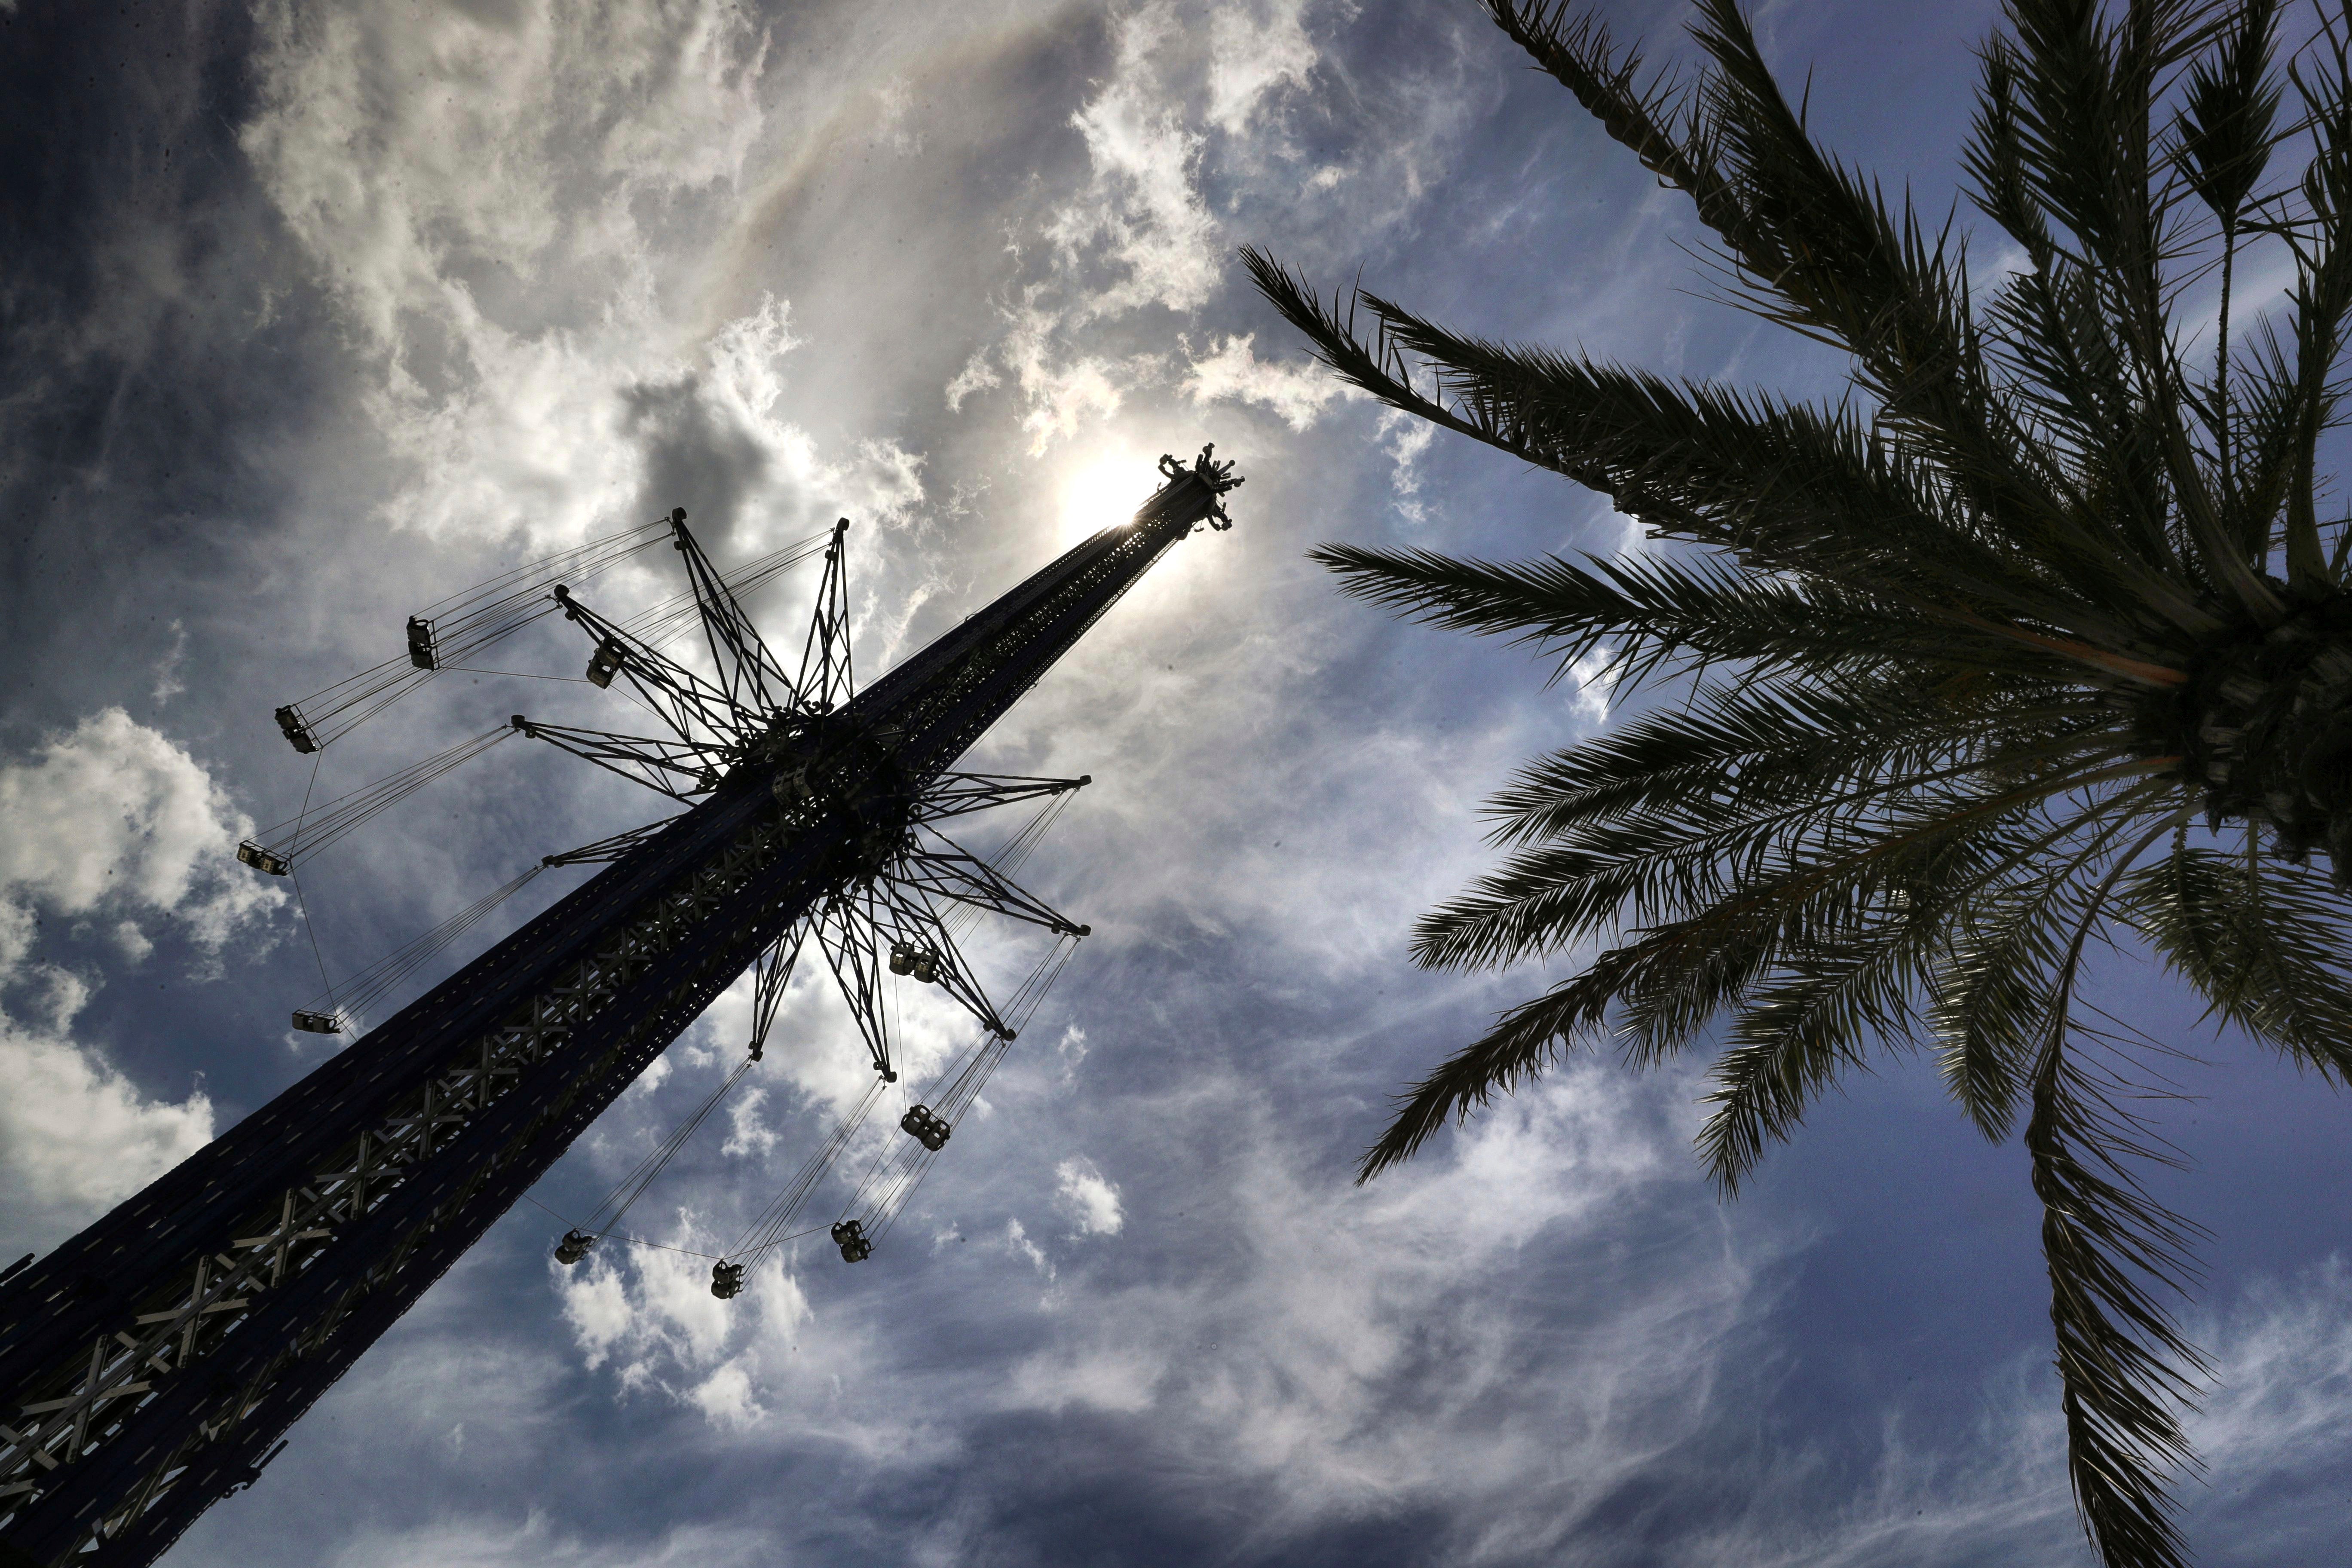 La atracción StarFlyer en el ICON Park de Orlando, donde un empleado murió el lunes